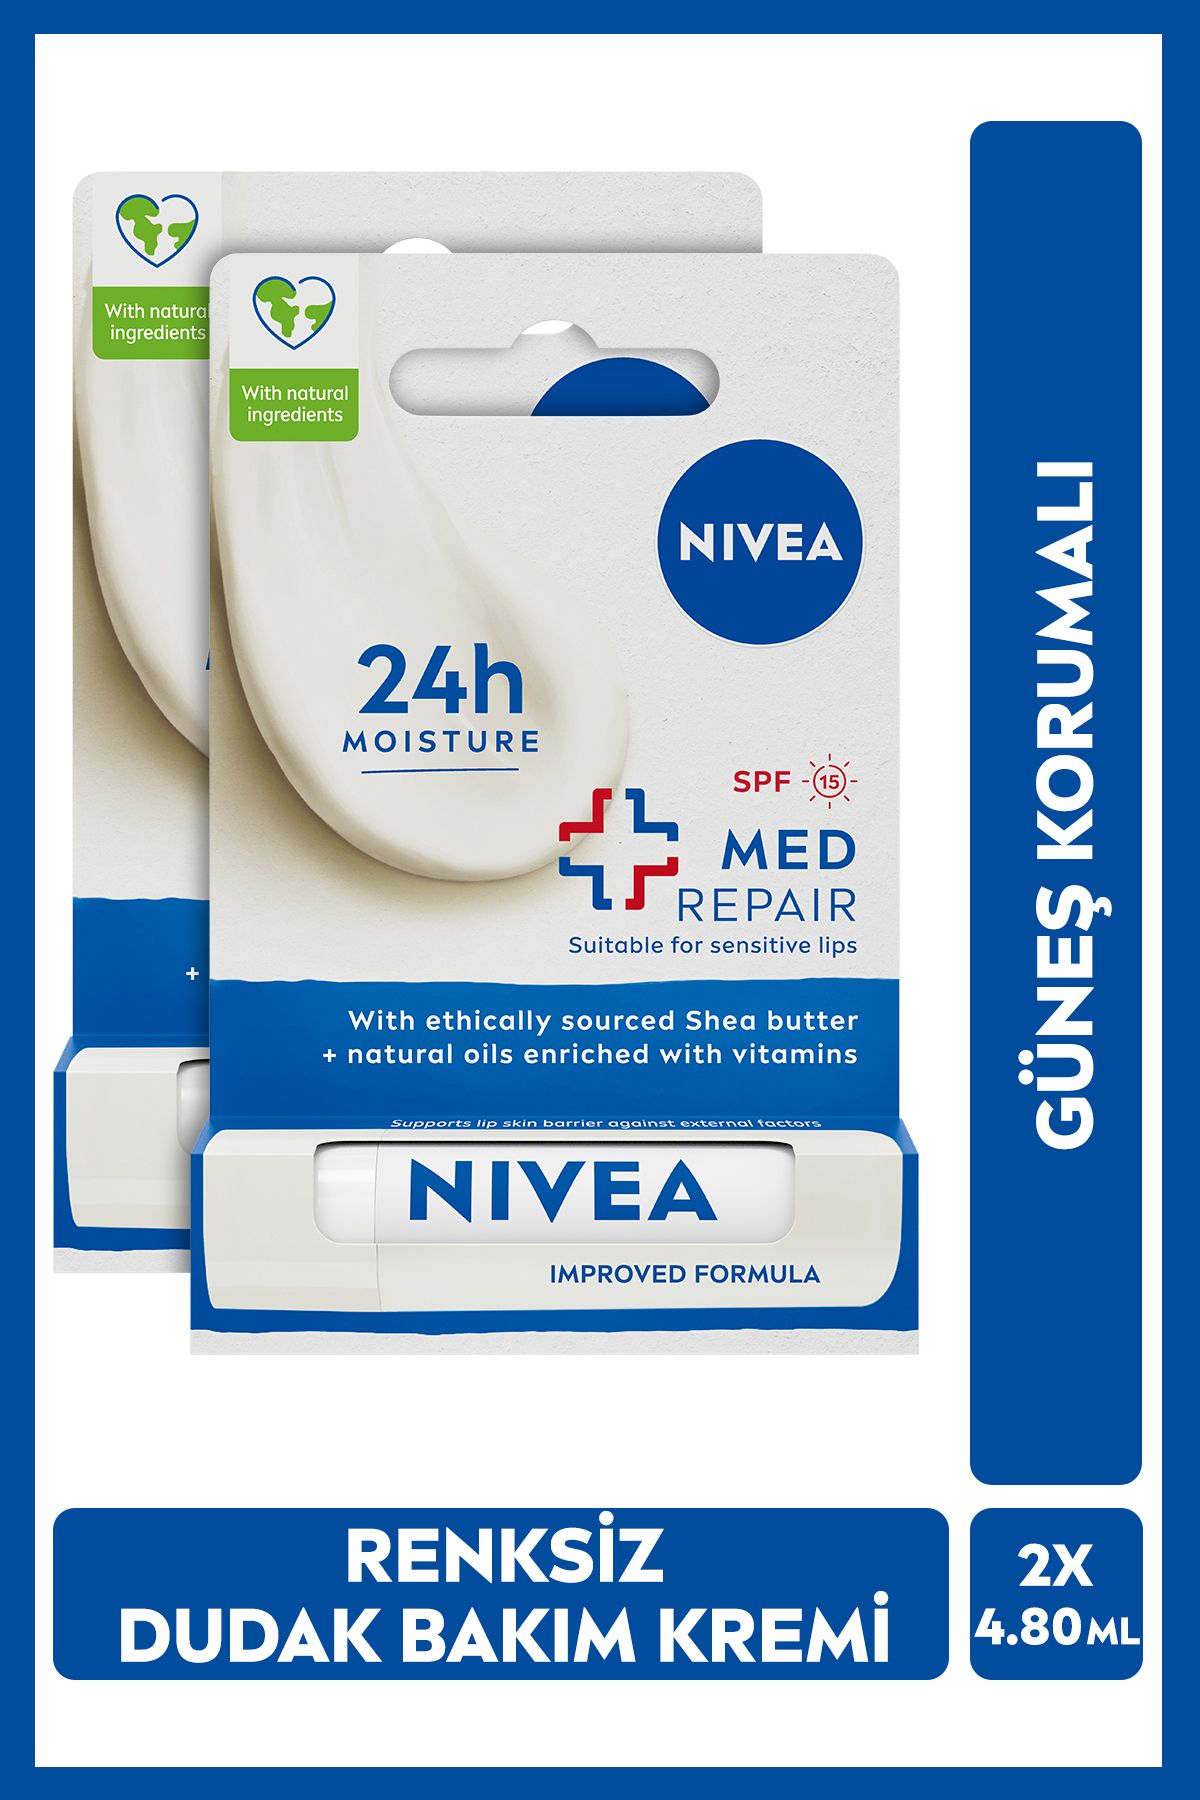 NIVEA Med Repair Dudak Bakım Kremi,24 Saat Nem,doğal Yağlar Ile Çatlamış Dudak Bakım,4,8grx2adet